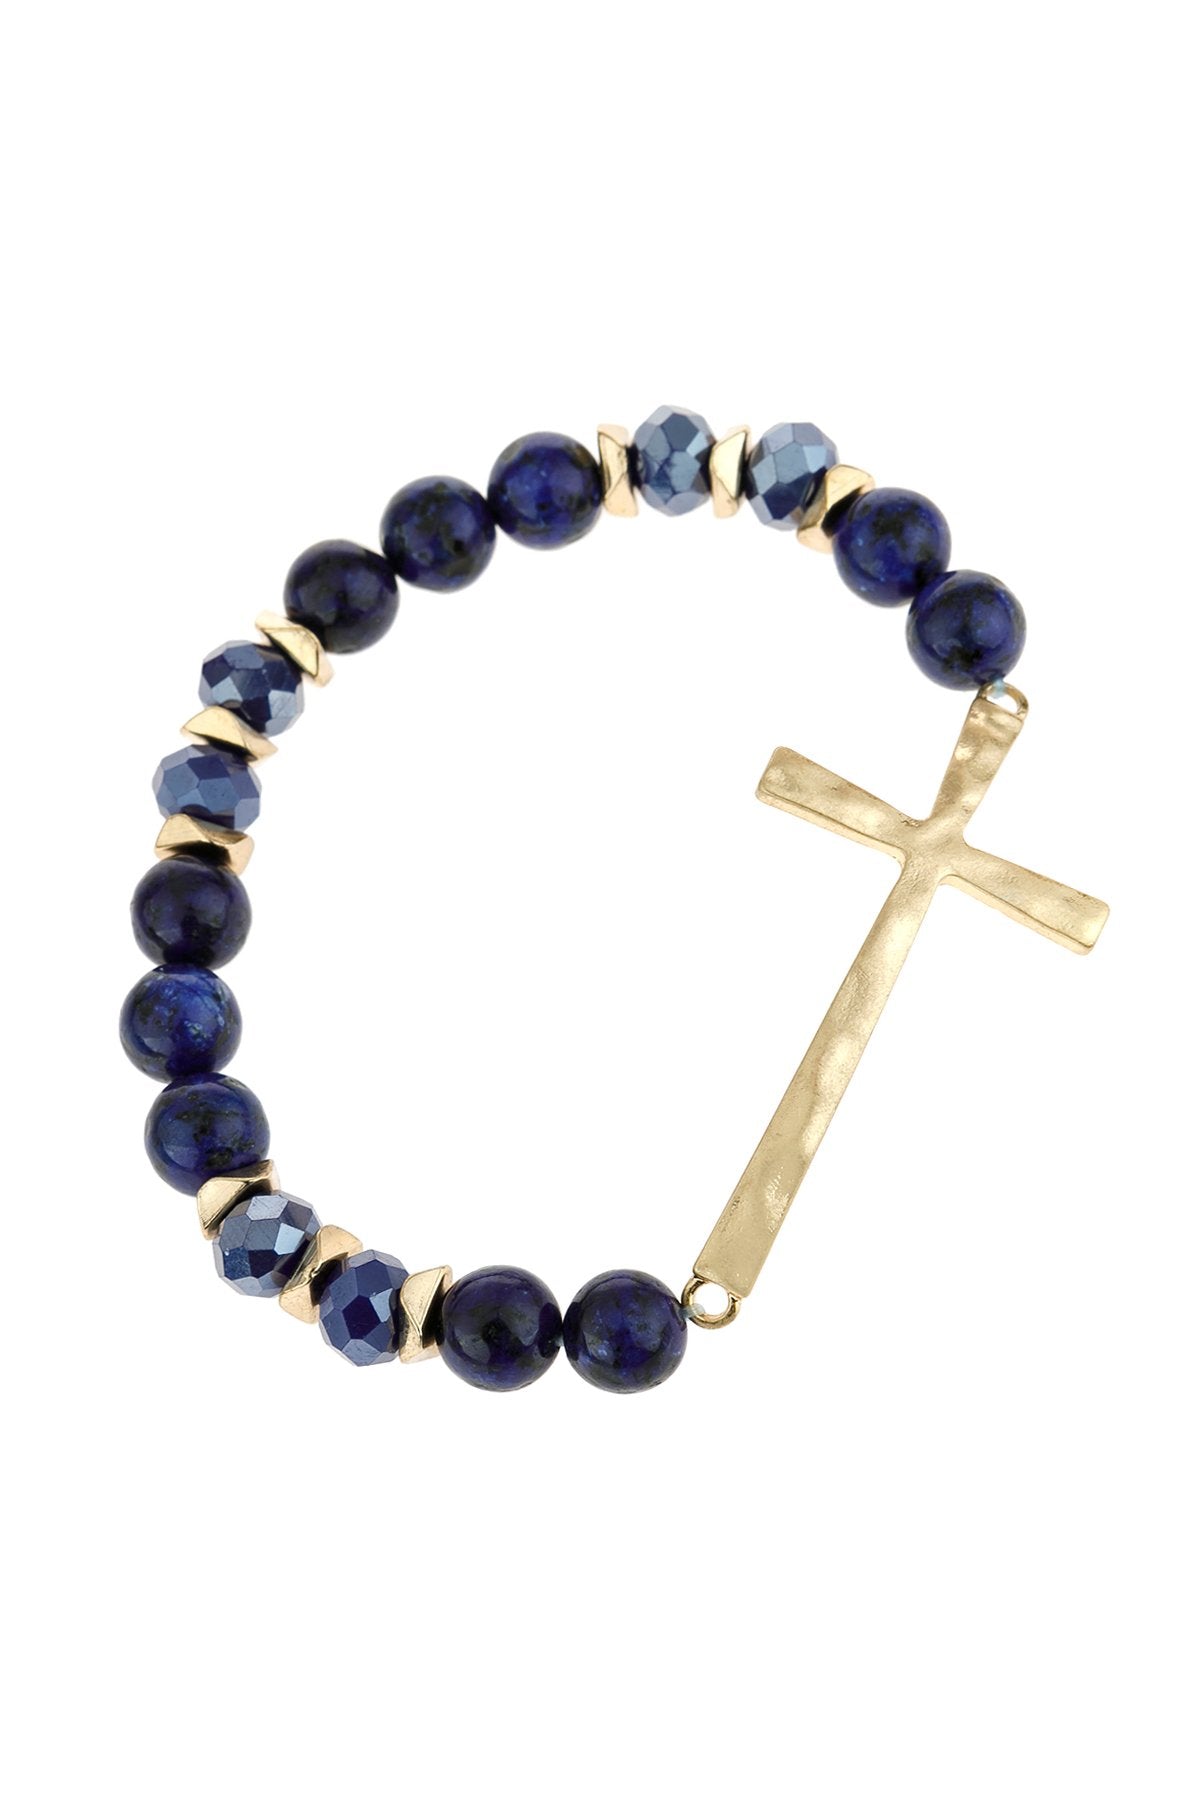 Hdb2998 - Mix Beads Hammered Cross Bracelet